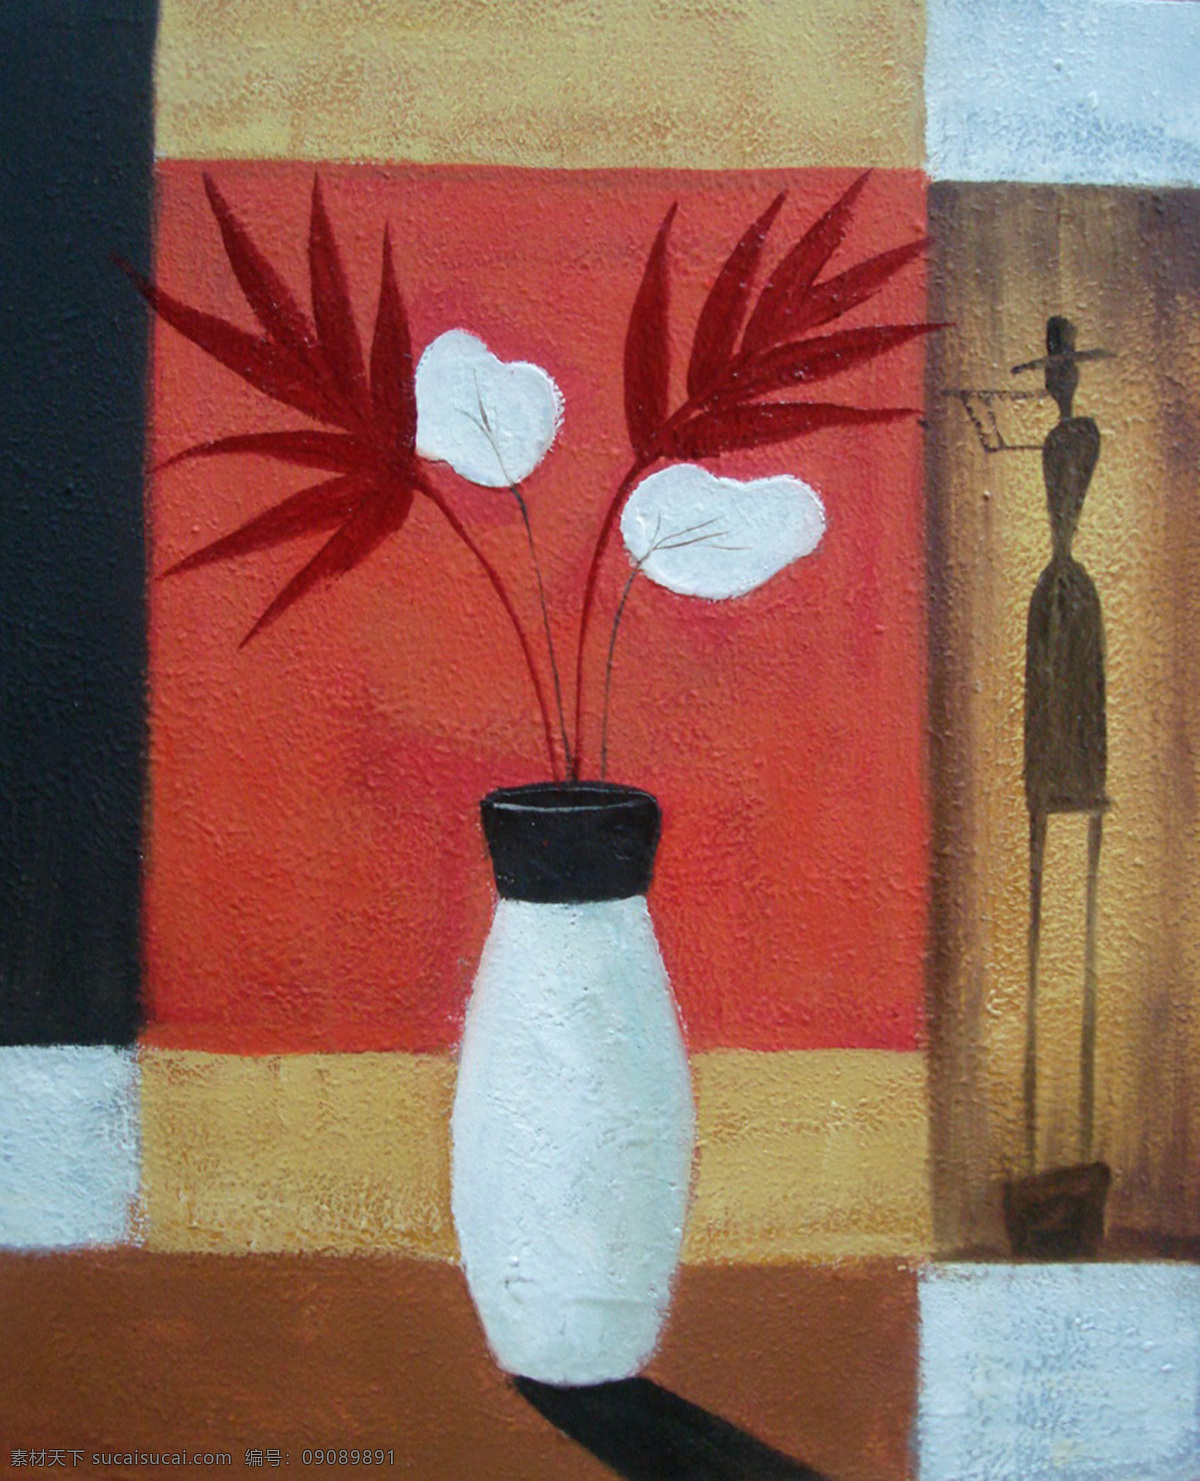 壁画 抽象 挂画 花 花瓶 花瓶油画 绘画书法 人物 油画 设计素材 模板下载 装饰画 无框画 文化艺术 装饰素材